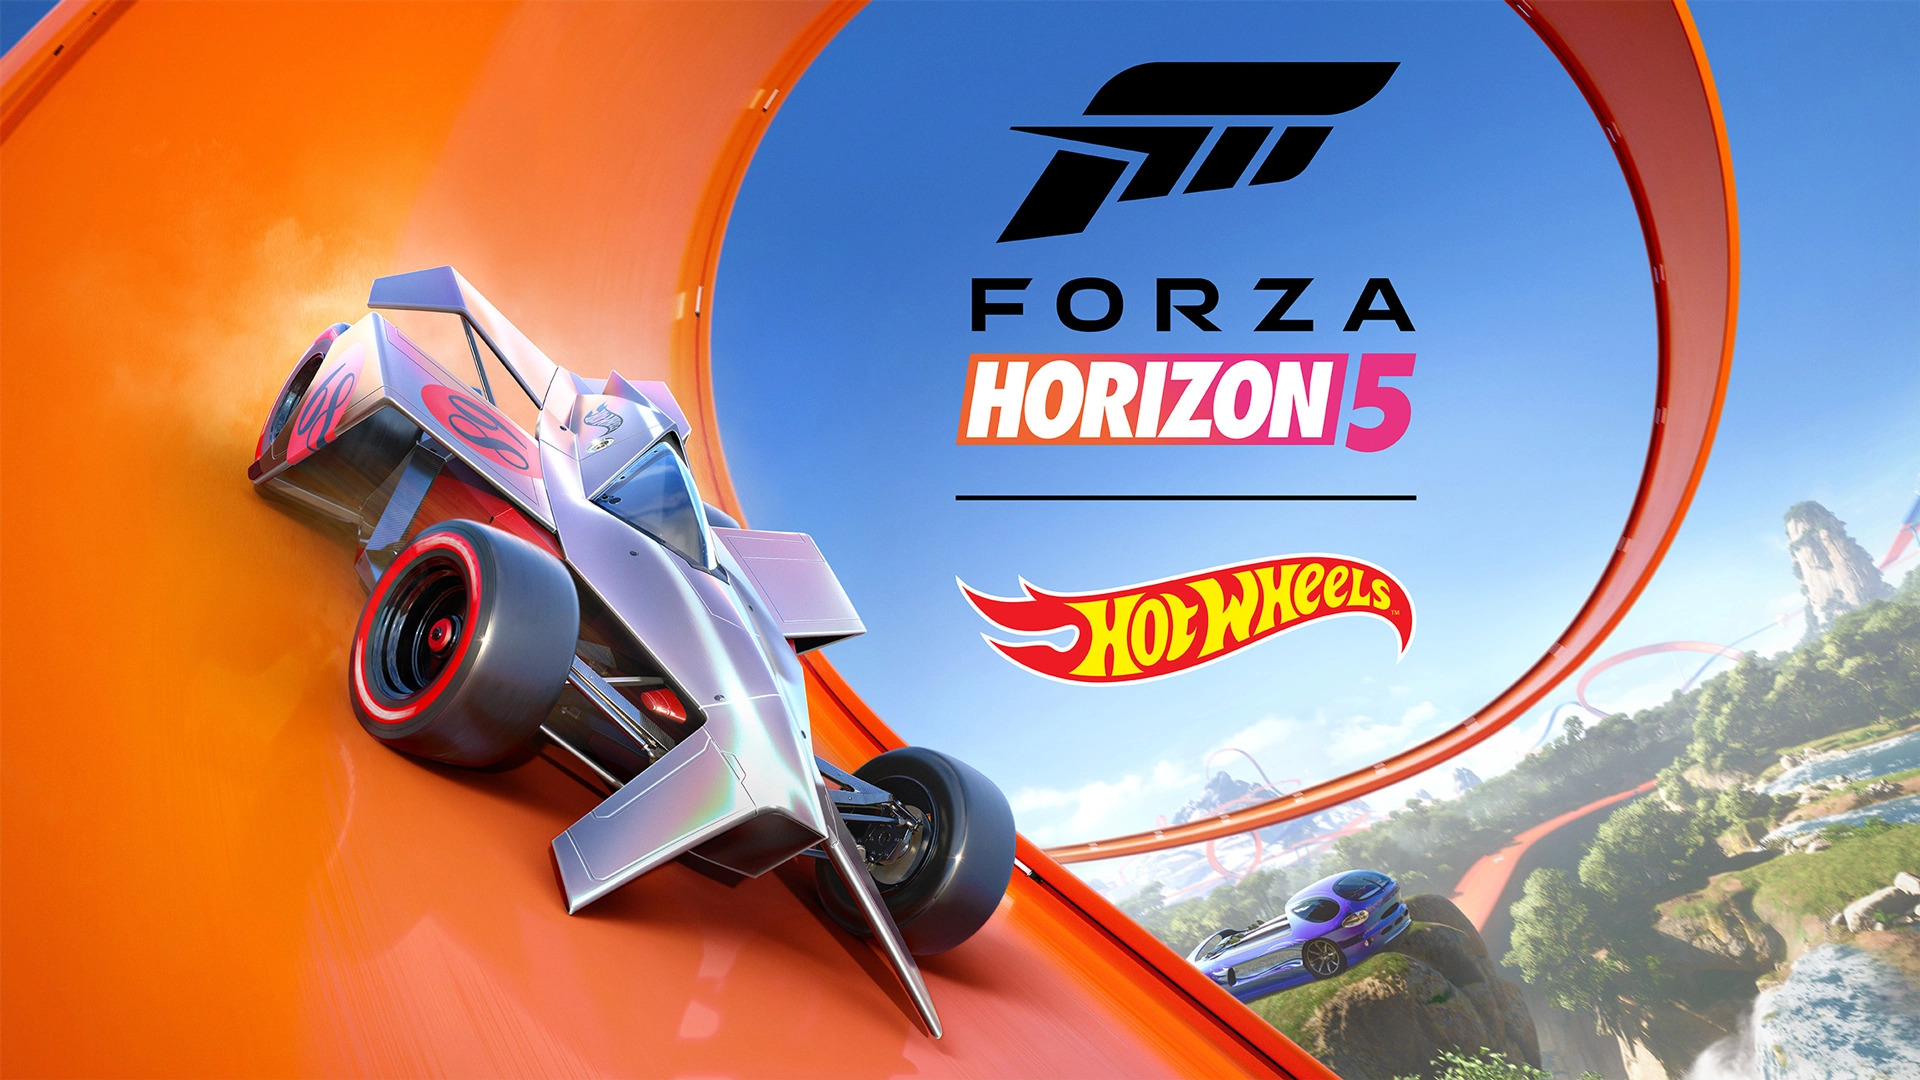 نقد و بررسی بازی Forza Horizon 5: Hot Wheels